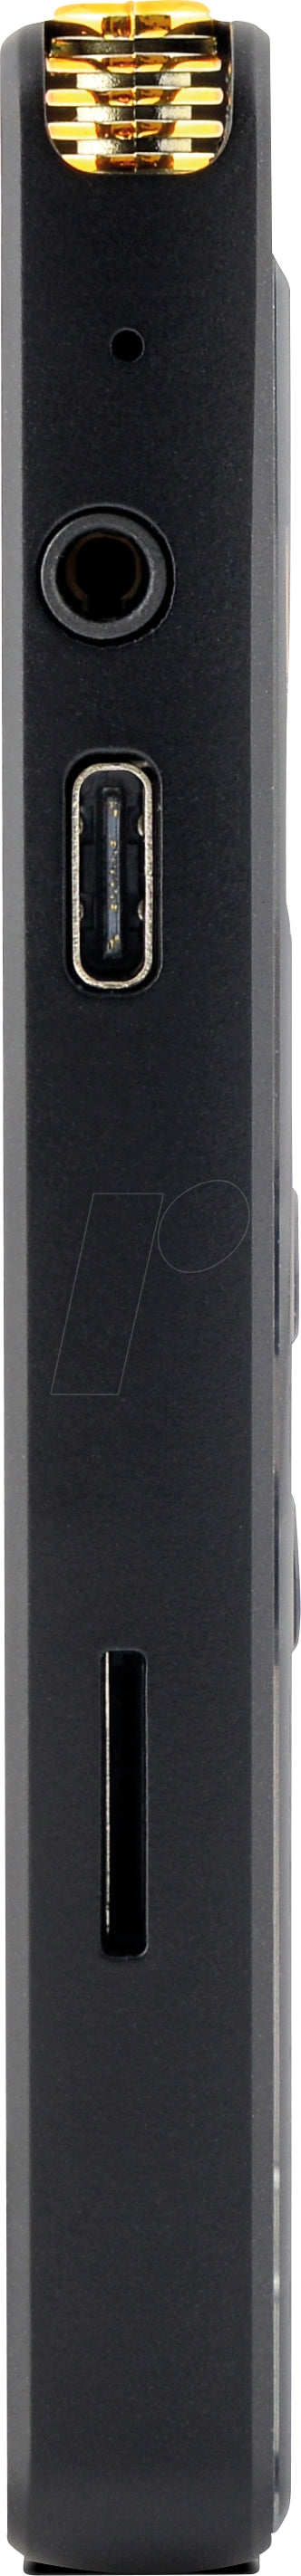 Digital Dictaphone for Stereo Recording Kodak VRC550, 8GB Memory